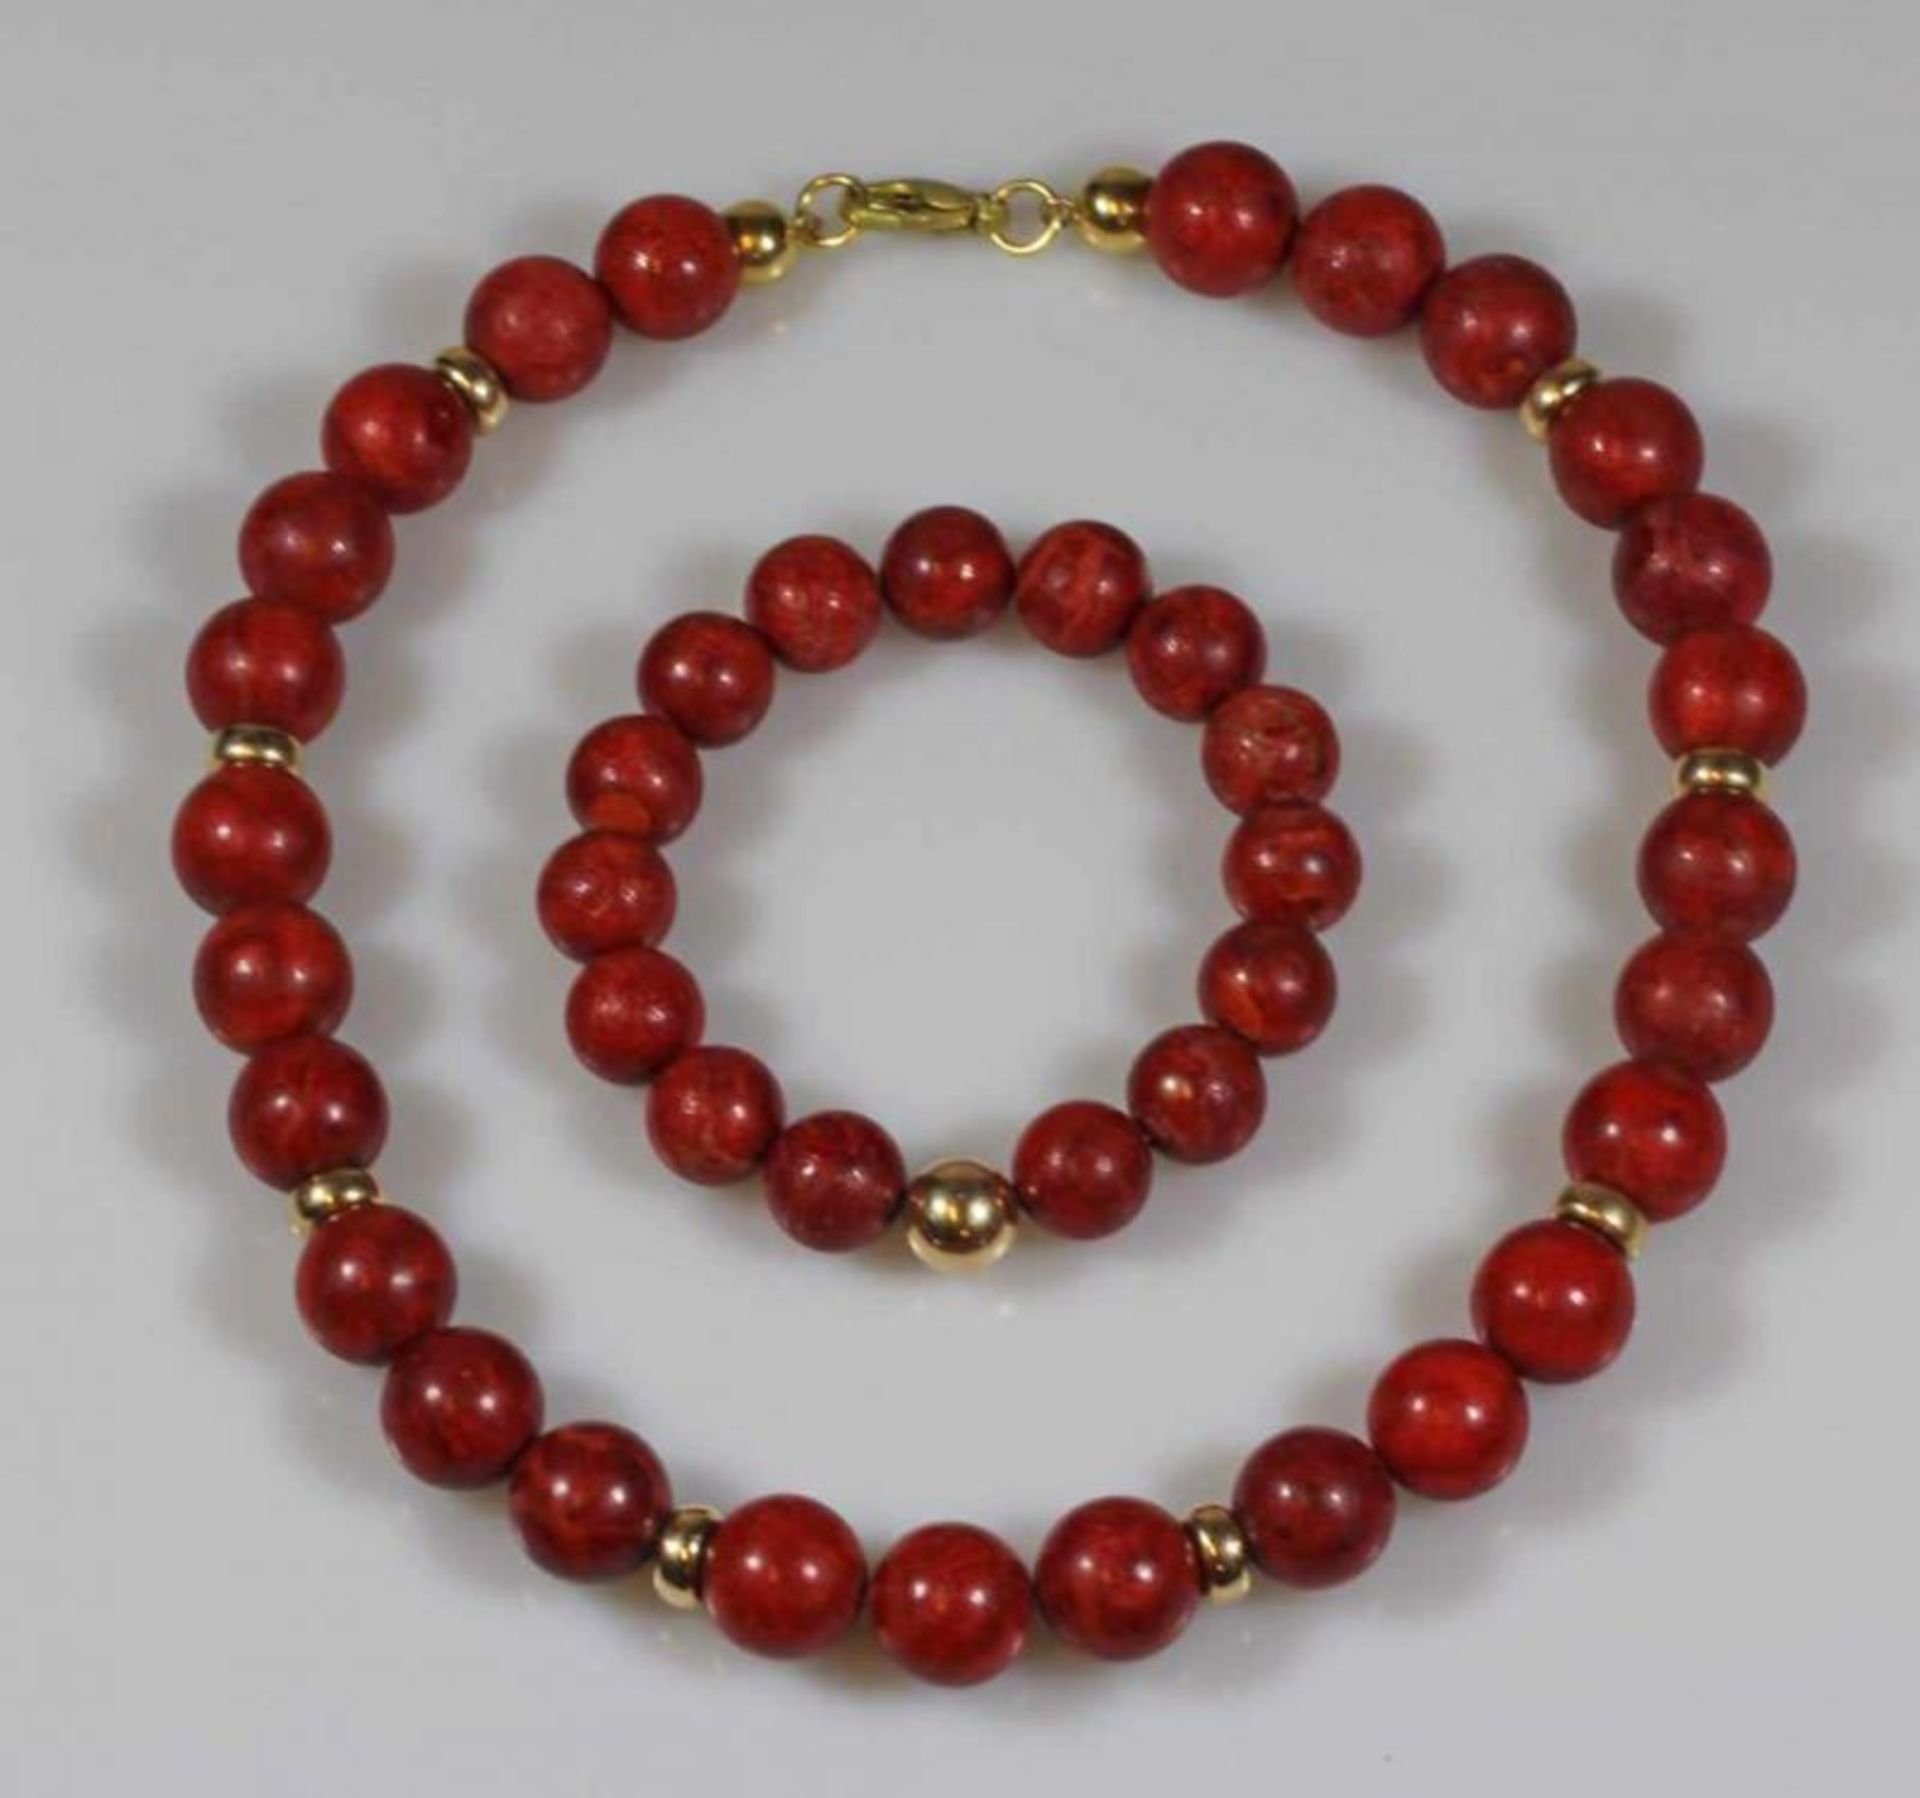 Schmuckset: Halskette und Armband, rote Schaum-Korallkugeln, goldfarbene Elemente, Kette 42 cm lang,